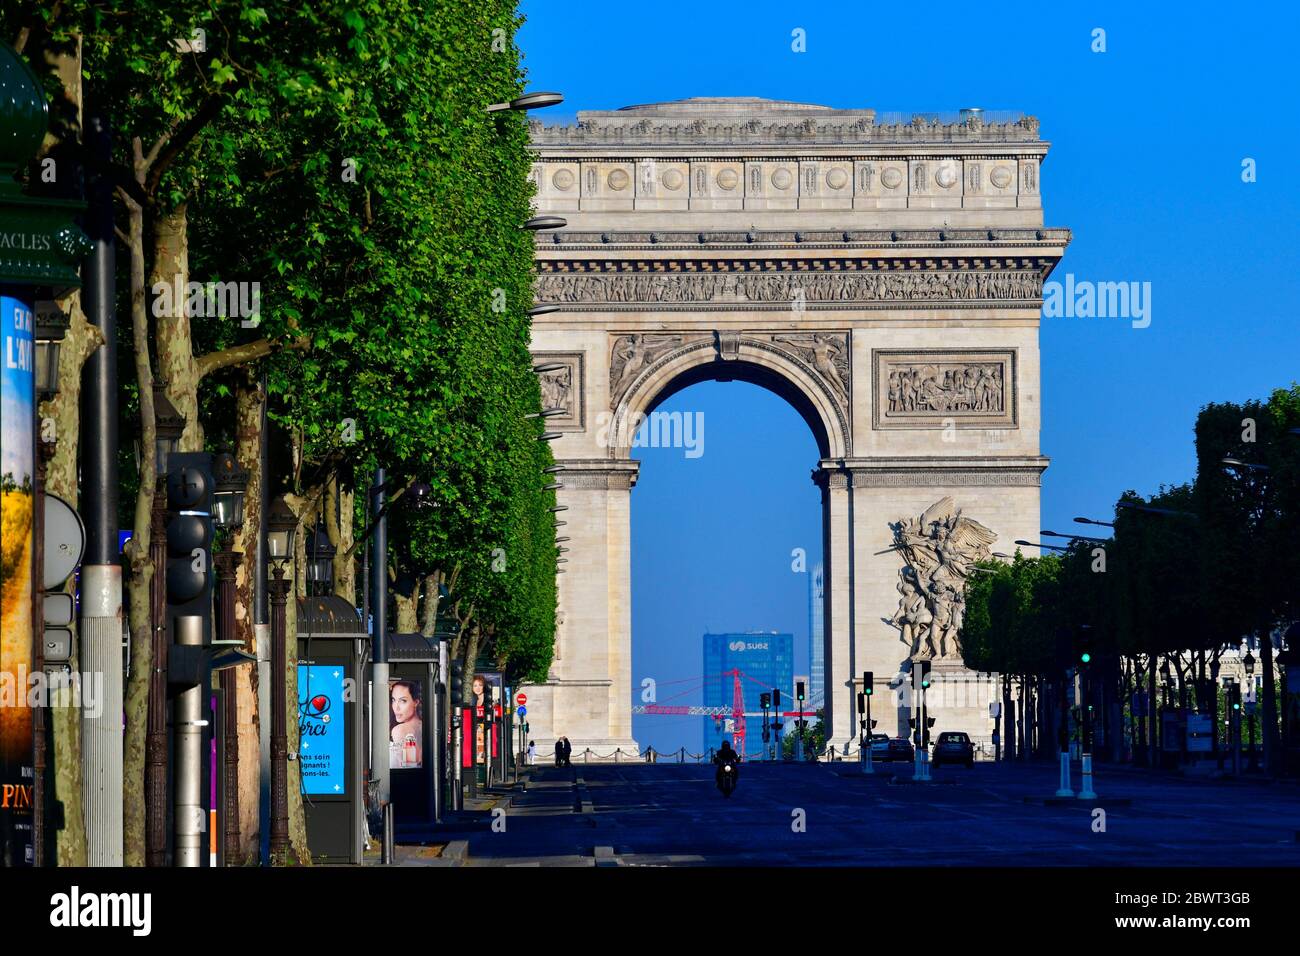 Samsung store on Champs-Élysées Paris France Europe Stock Photo - Alamy